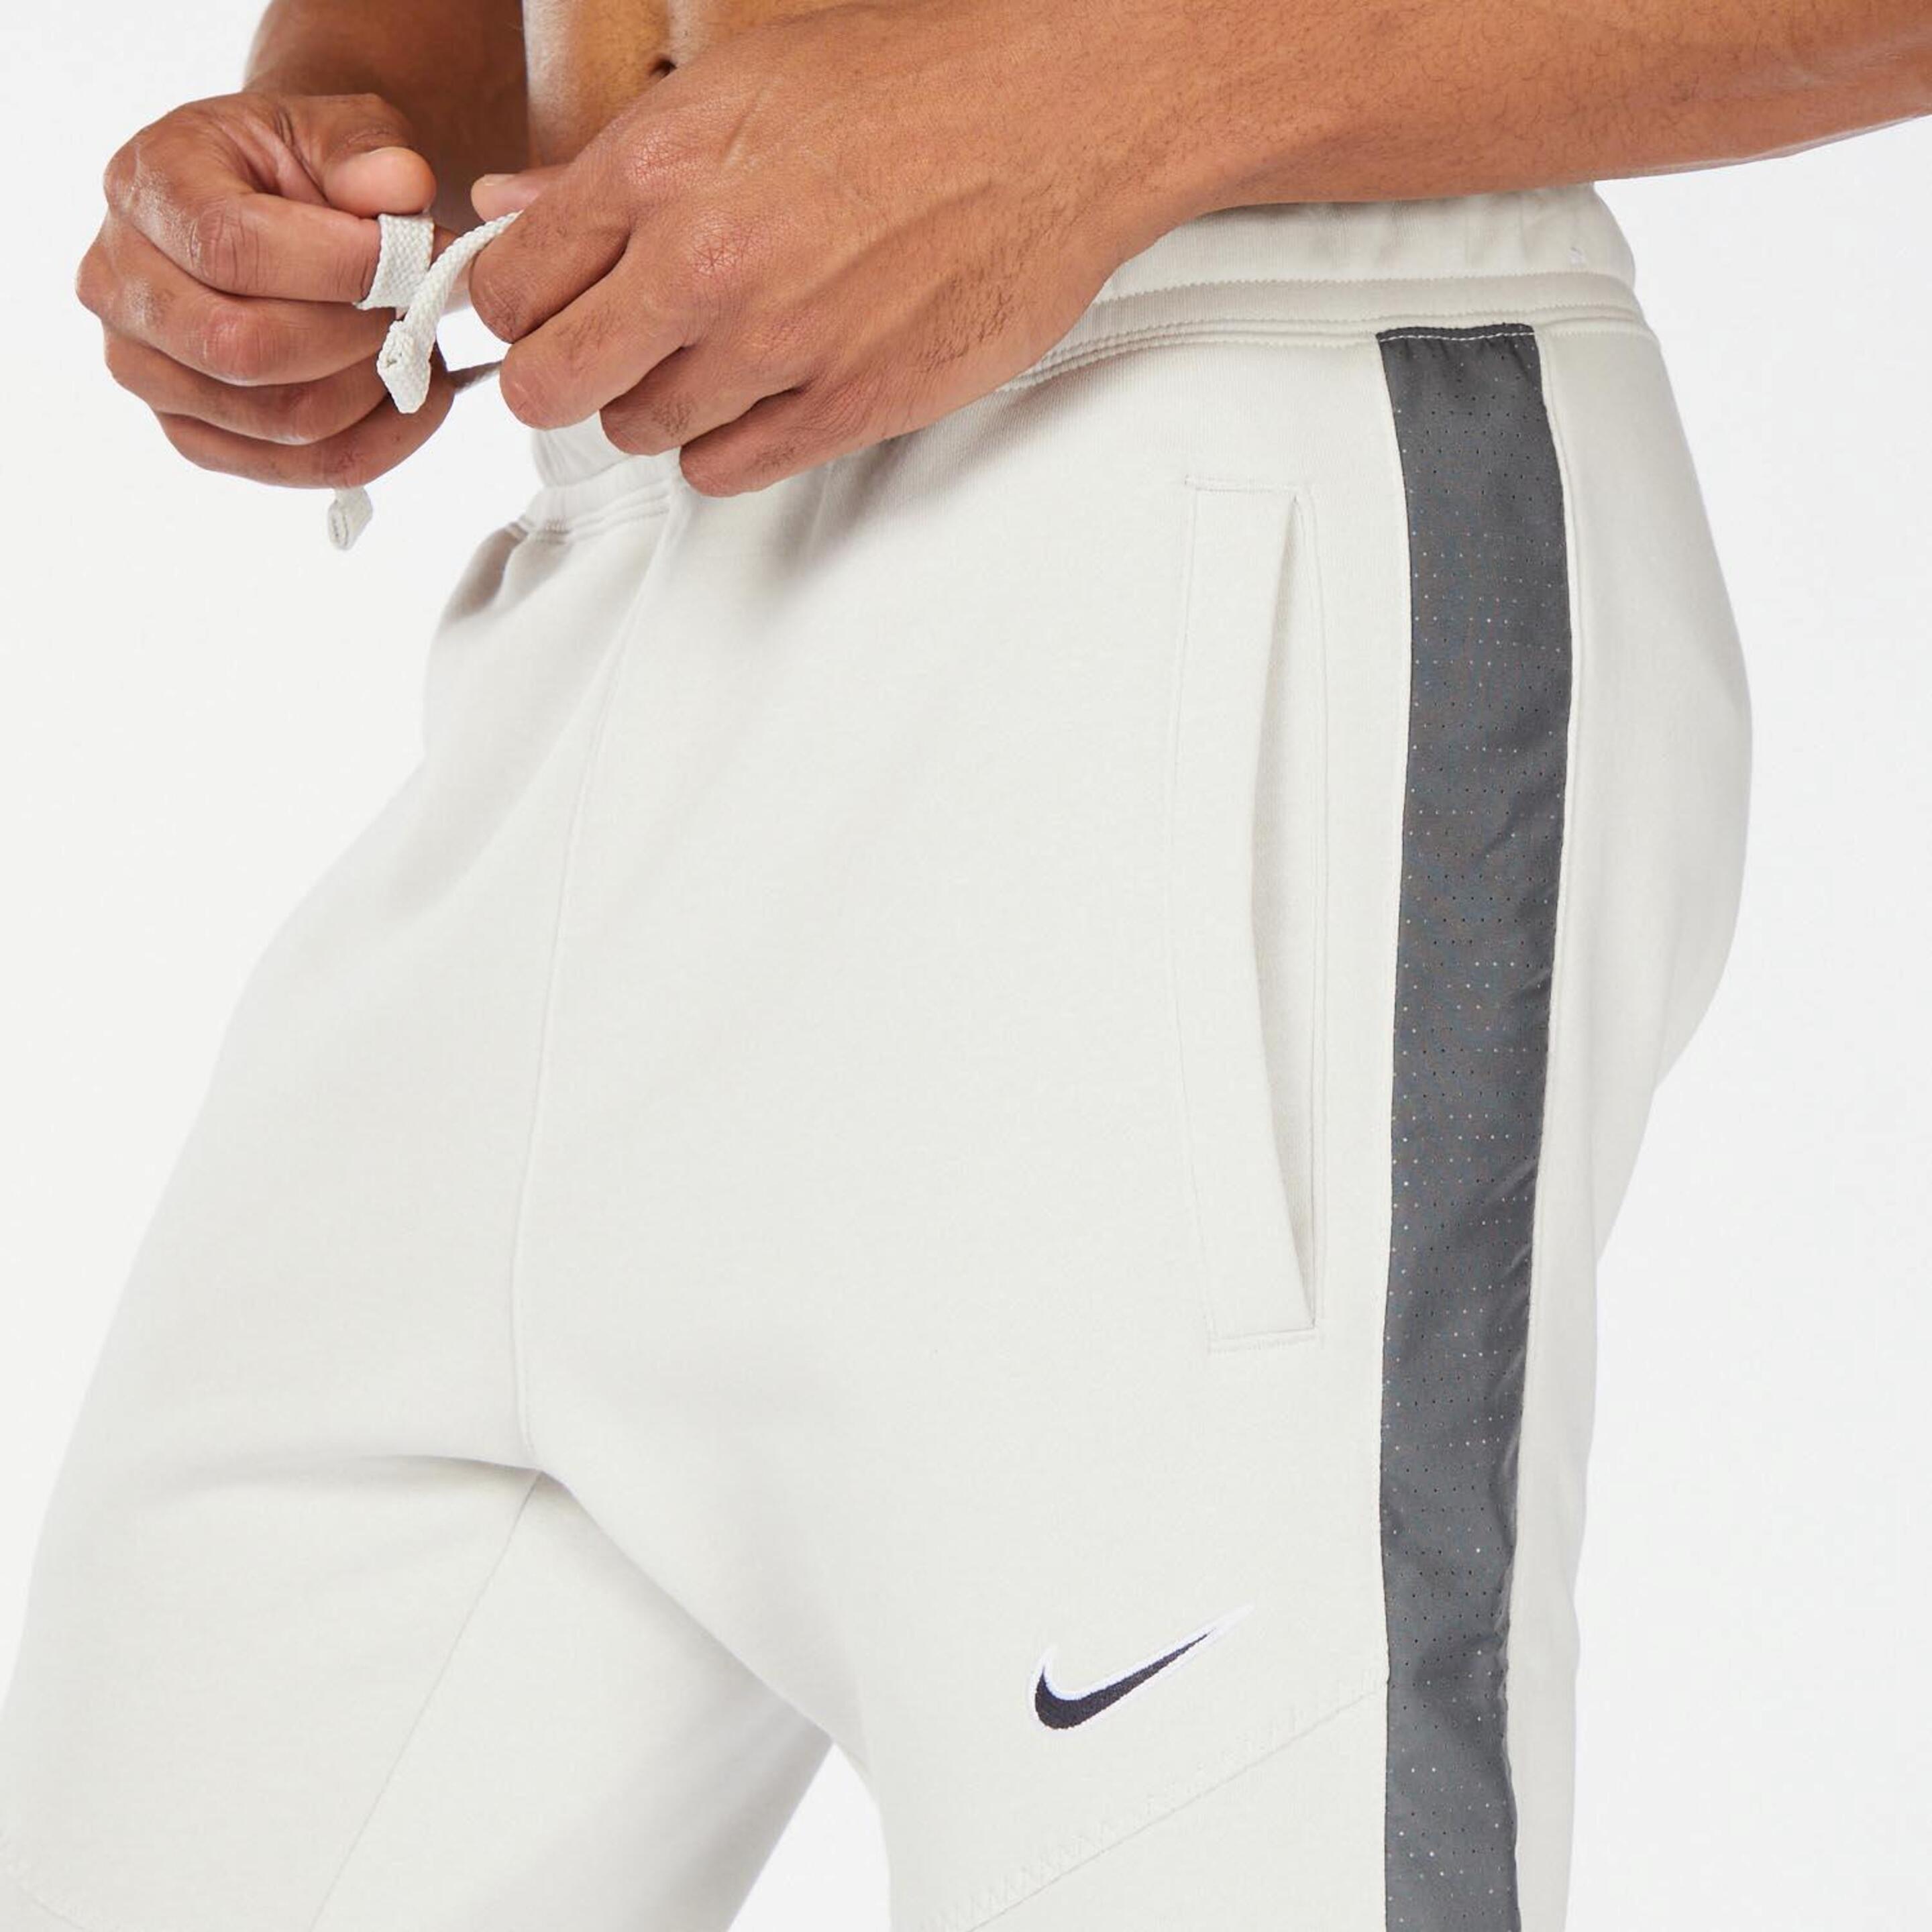 Nike Sport - Crudo - Pantalón Hombre